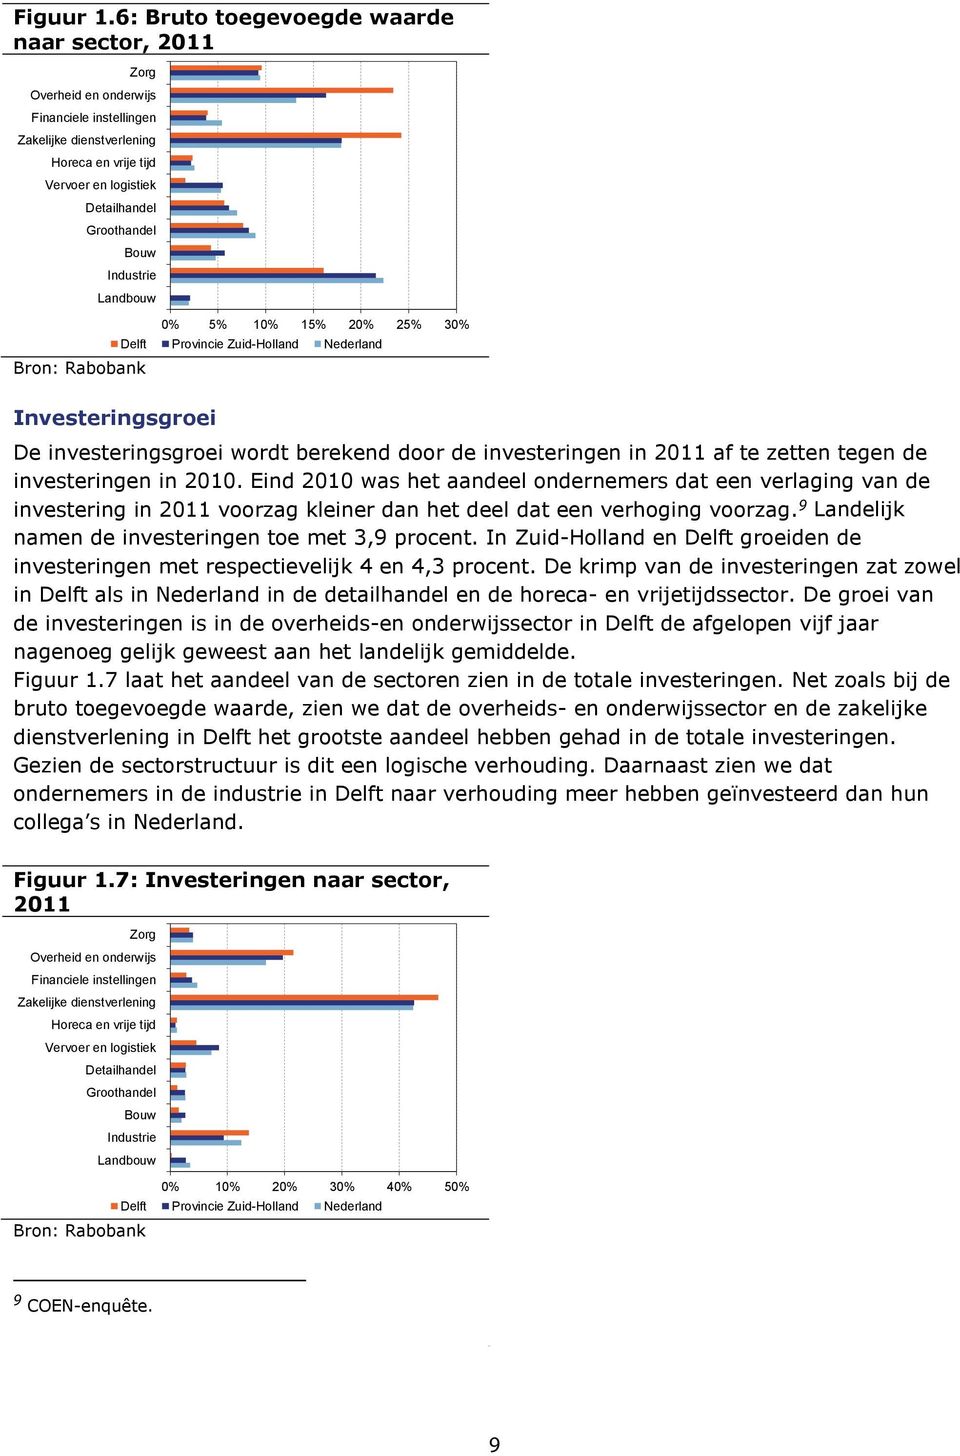 Industrie Landbouw Bron: Rabobank 0% 5% 10% 15% 20% 25% 30% Delft Provincie Zuid-Holland Nederland Investeringsgroei De investeringsgroei wordt berekend door de investeringen in 2011 af te zetten